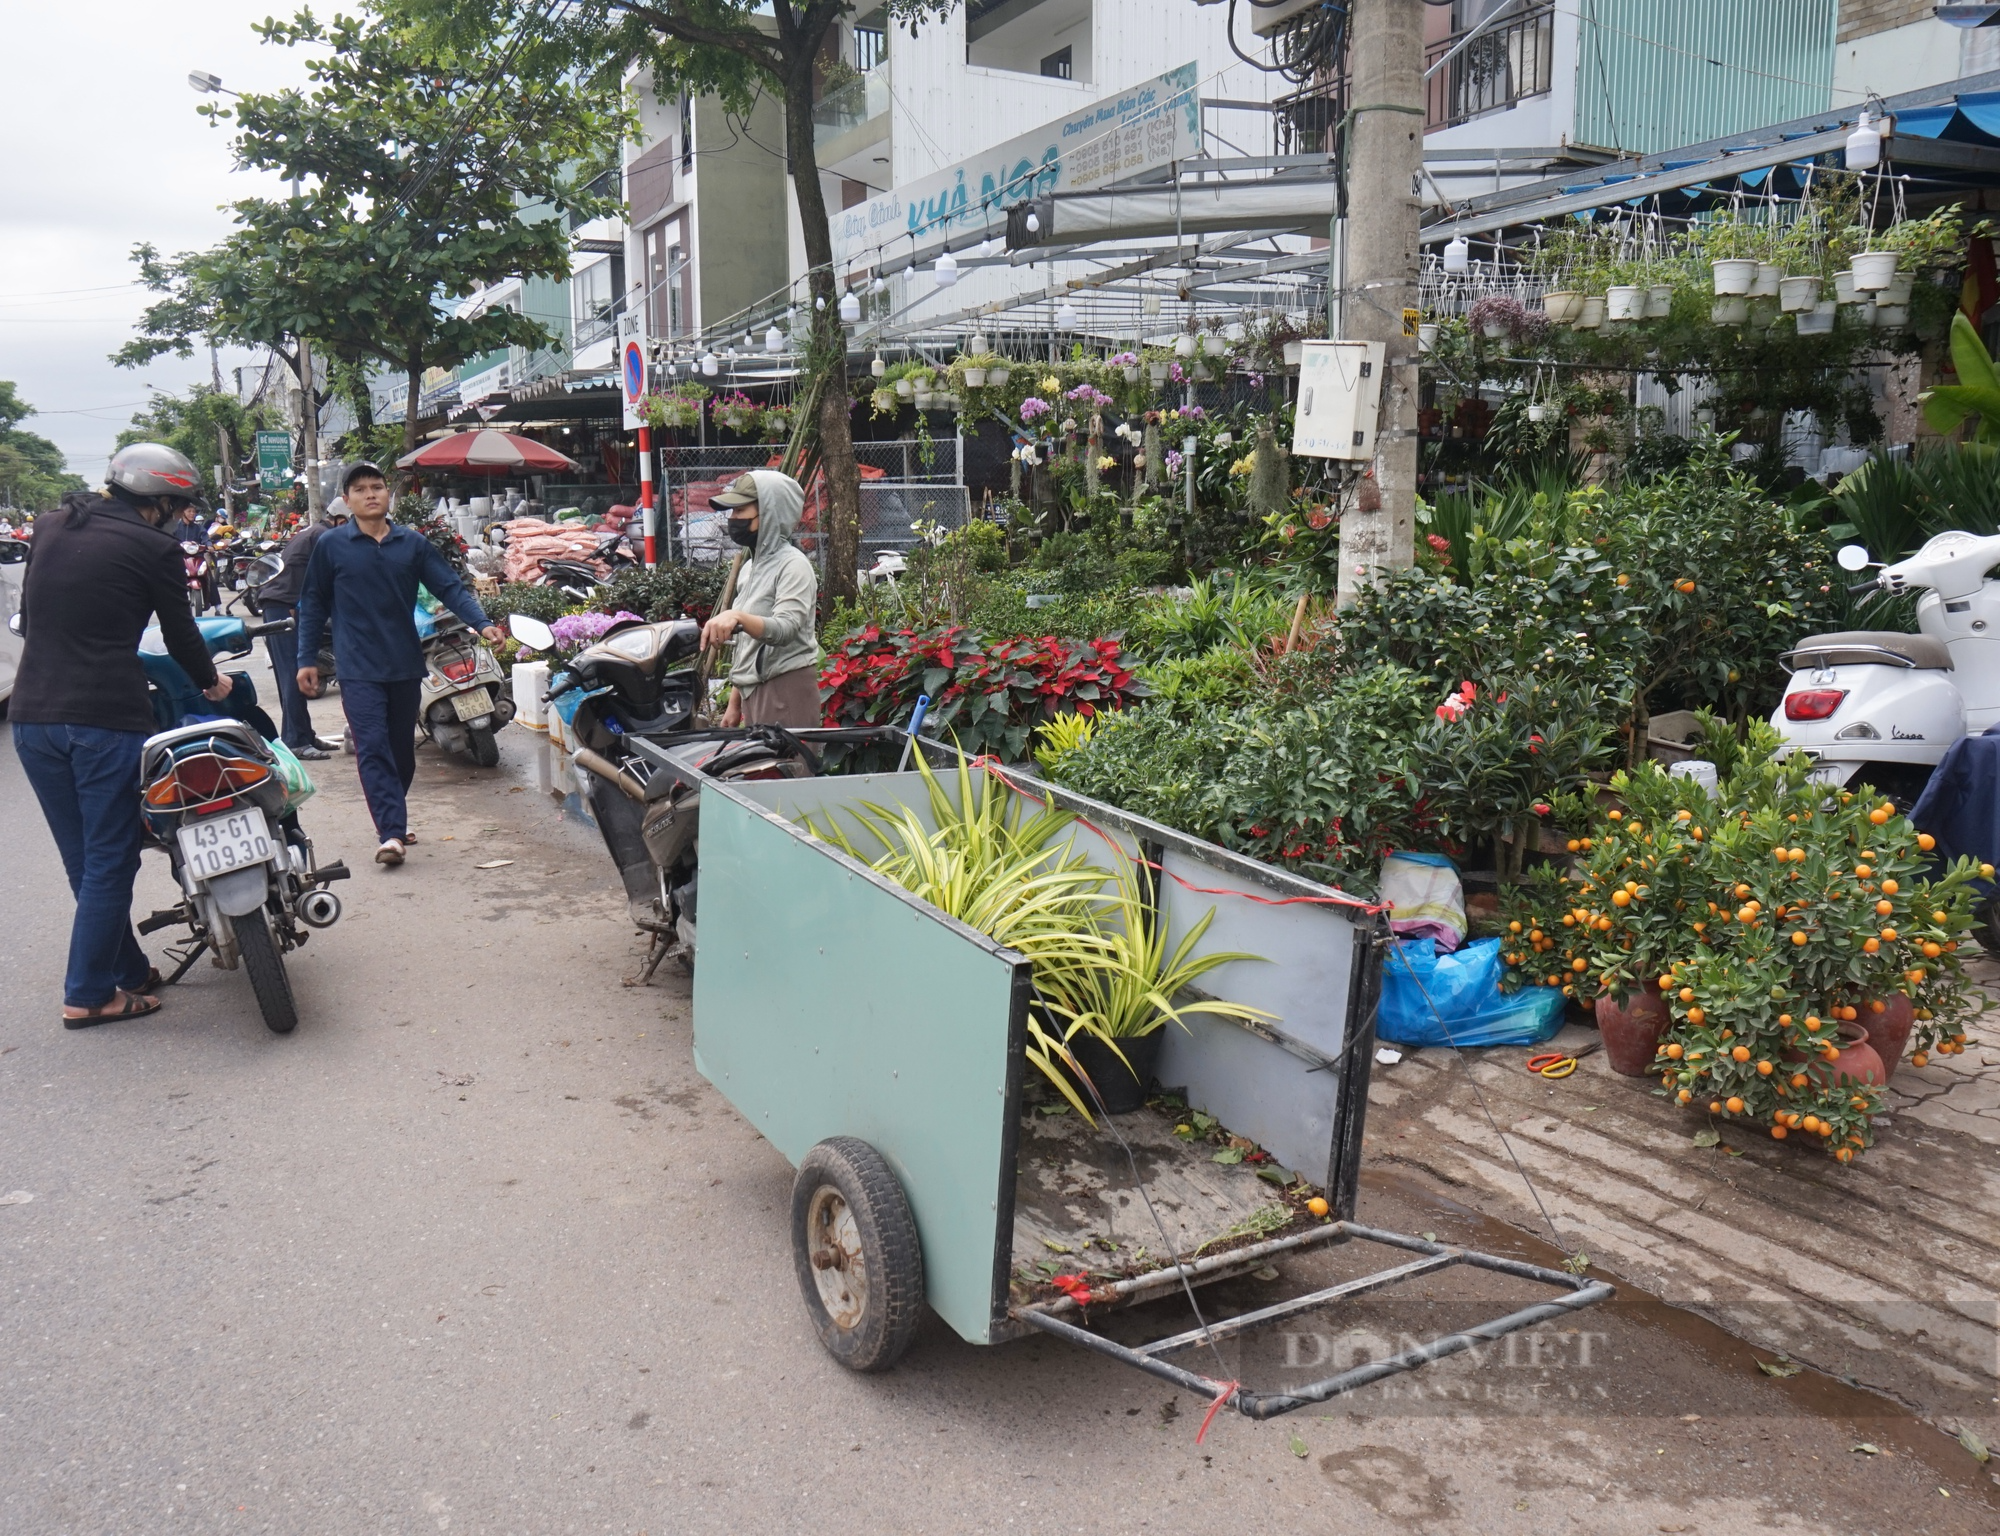 Đà Nẵng: Hoa treo hút hàng, sắc xuân ngập tràn trên các tuyến phố chuyên doanh - Ảnh 5.